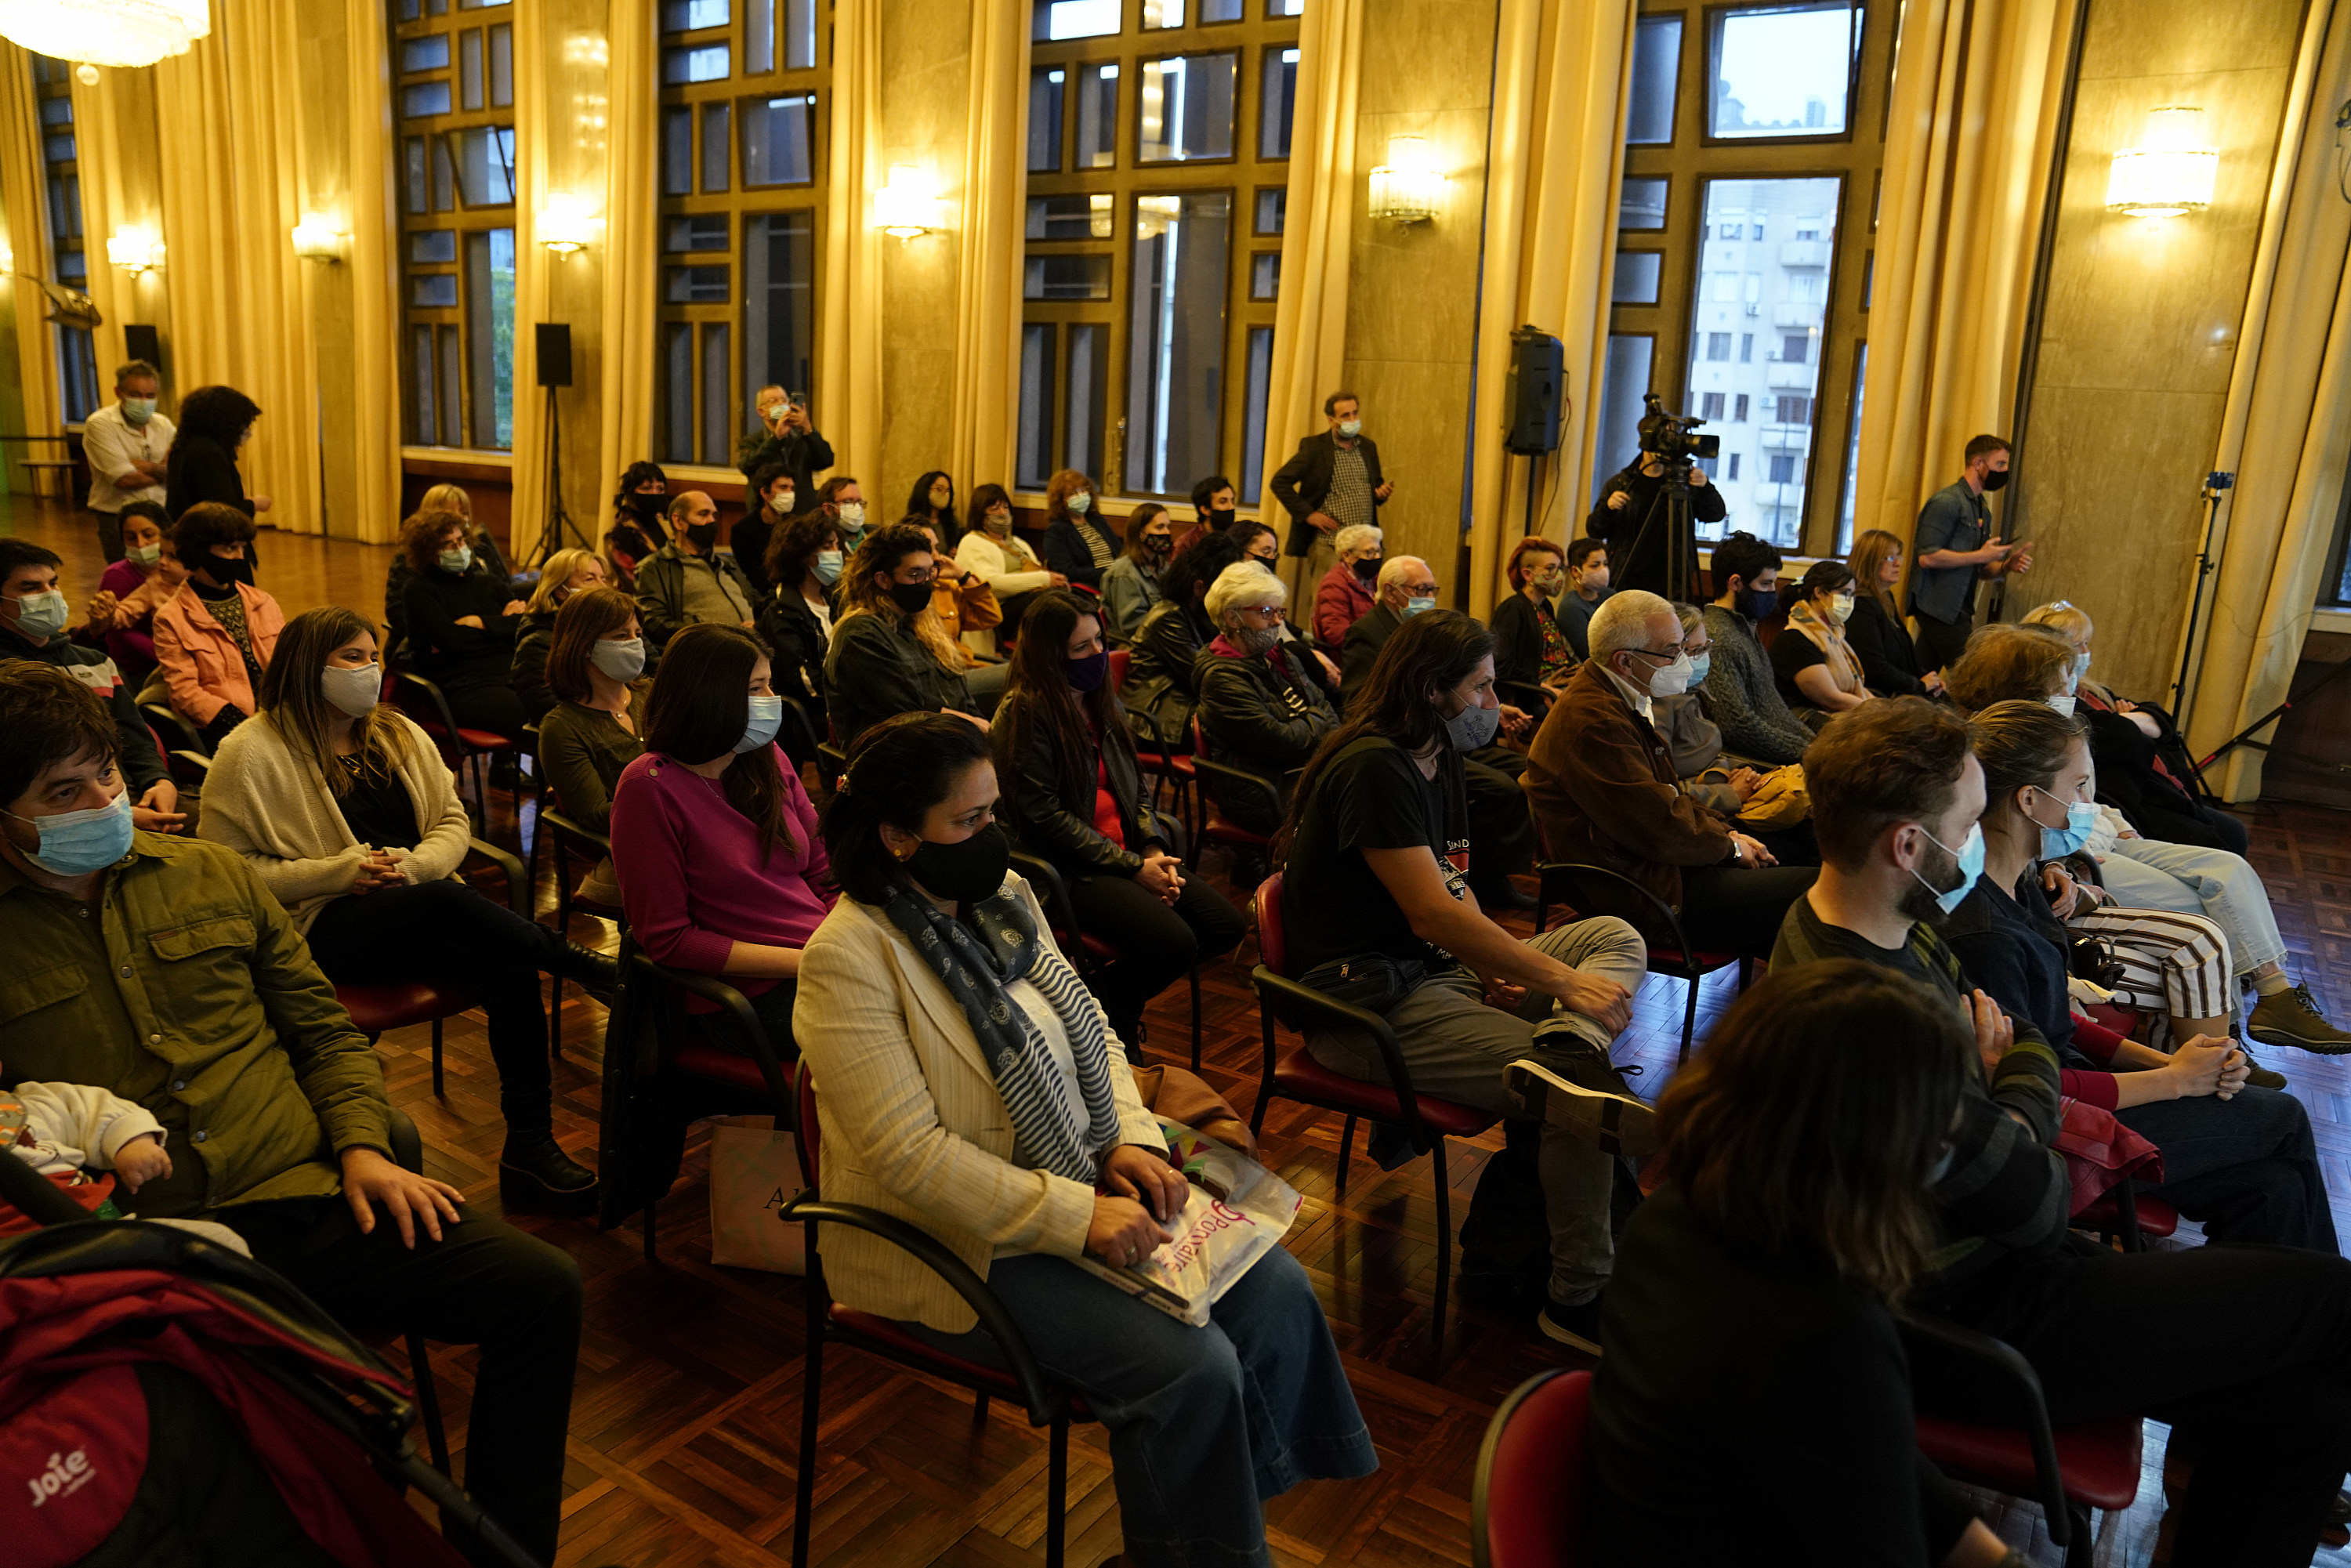 Ceremonia de entrega de premios del Concurso literario de Montevideo Juan Carlos Onetti edición 2021